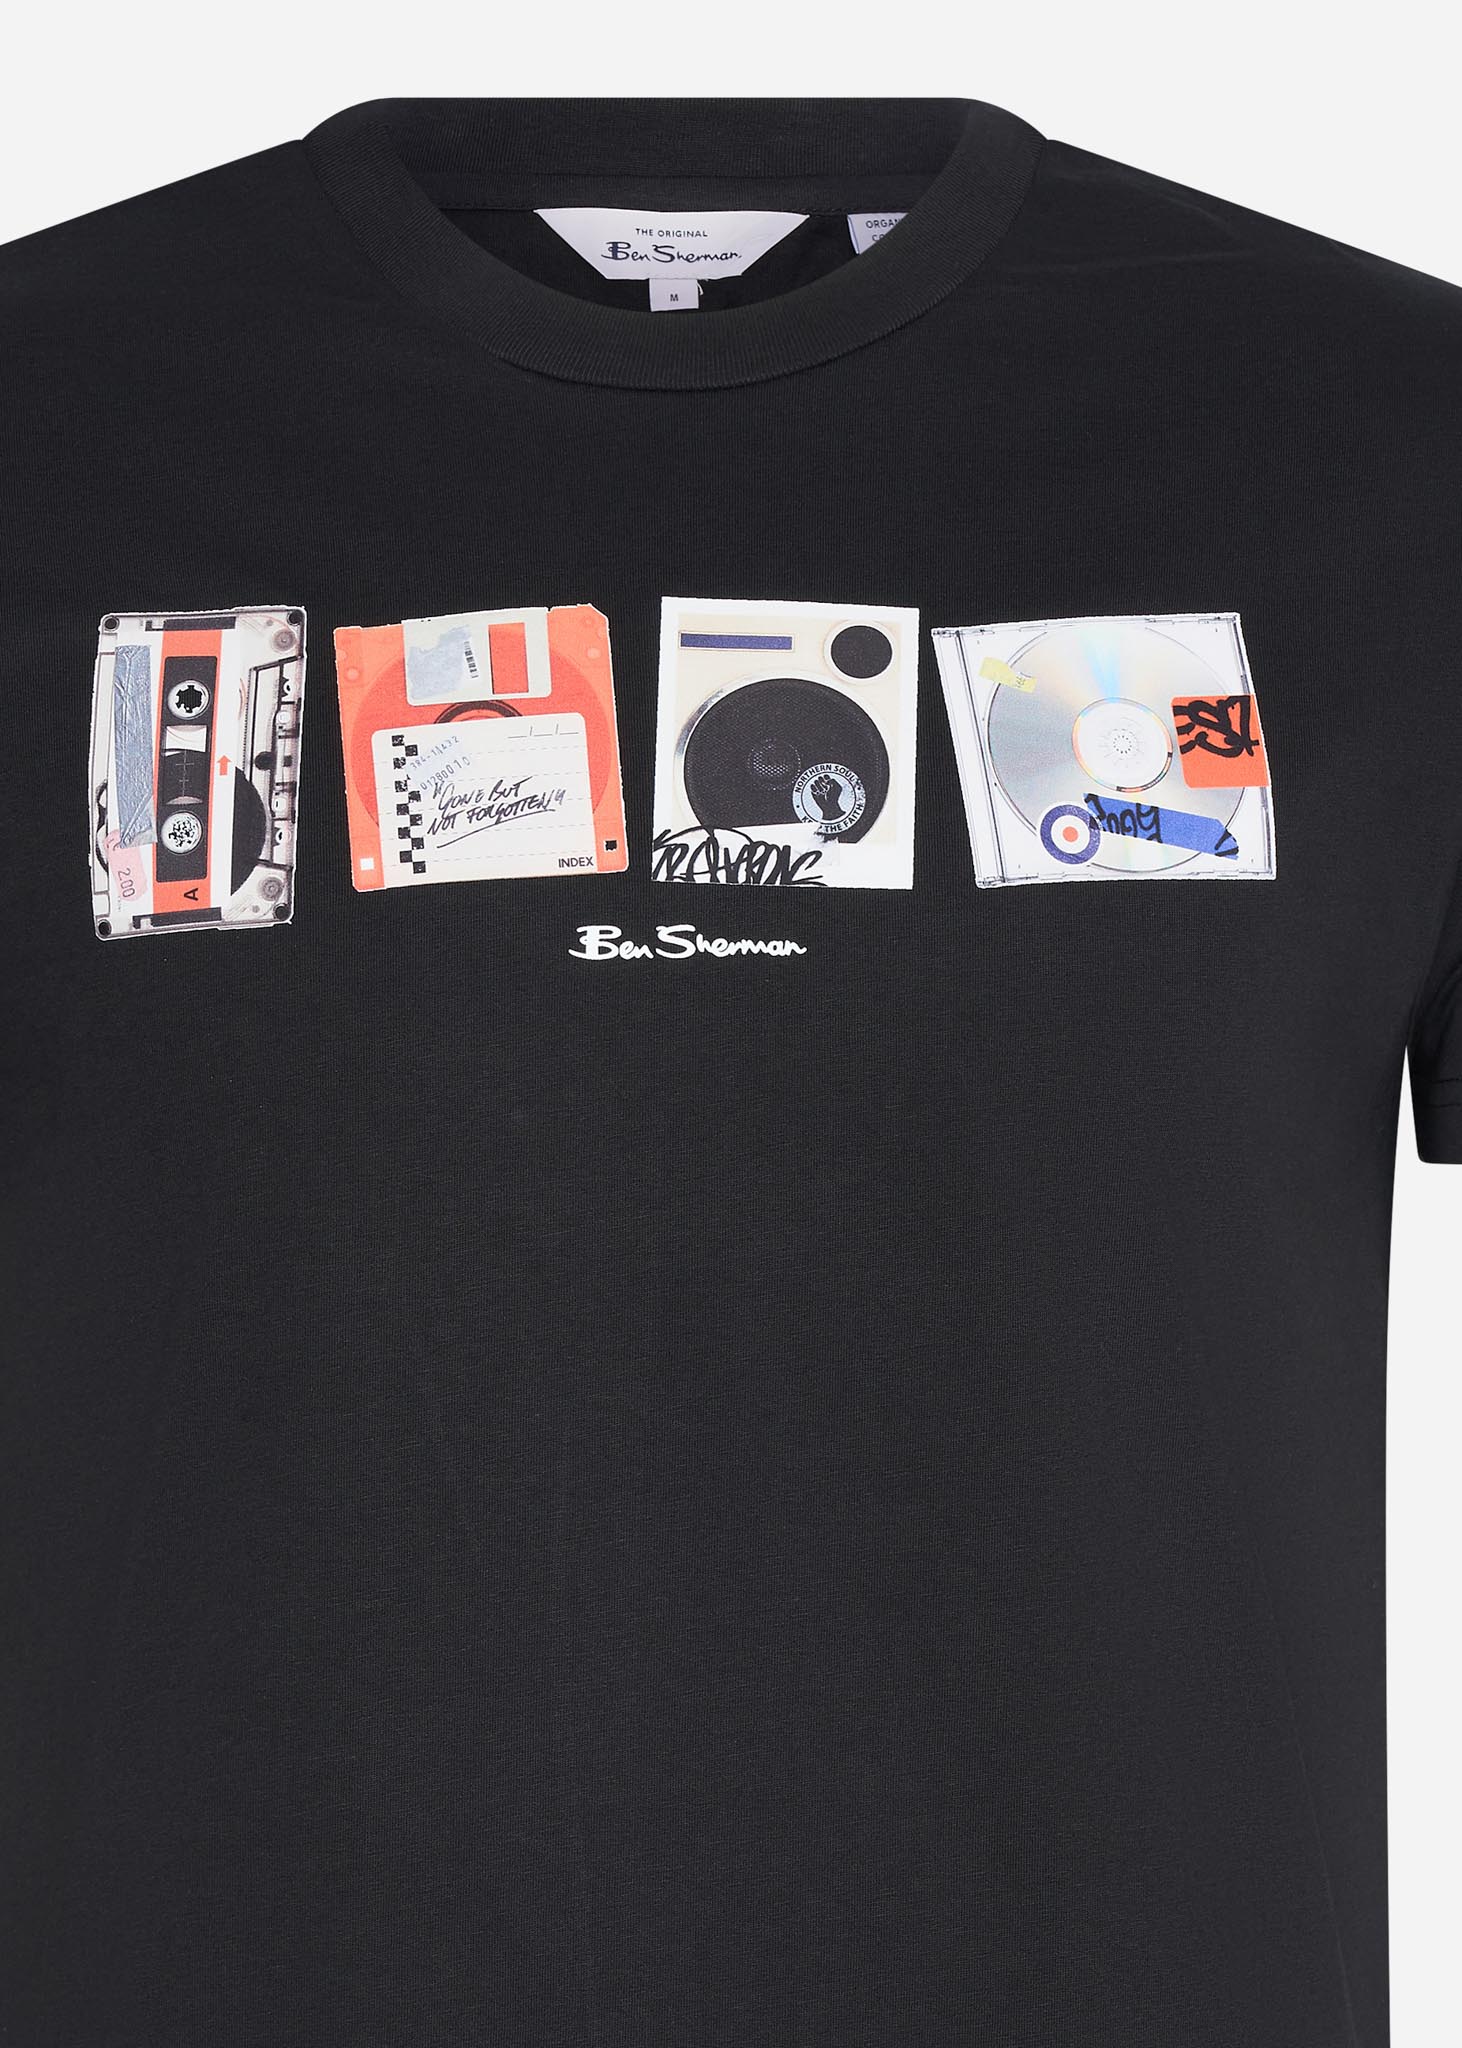 Ben Sherman T-shirts  Retro item stack - black 